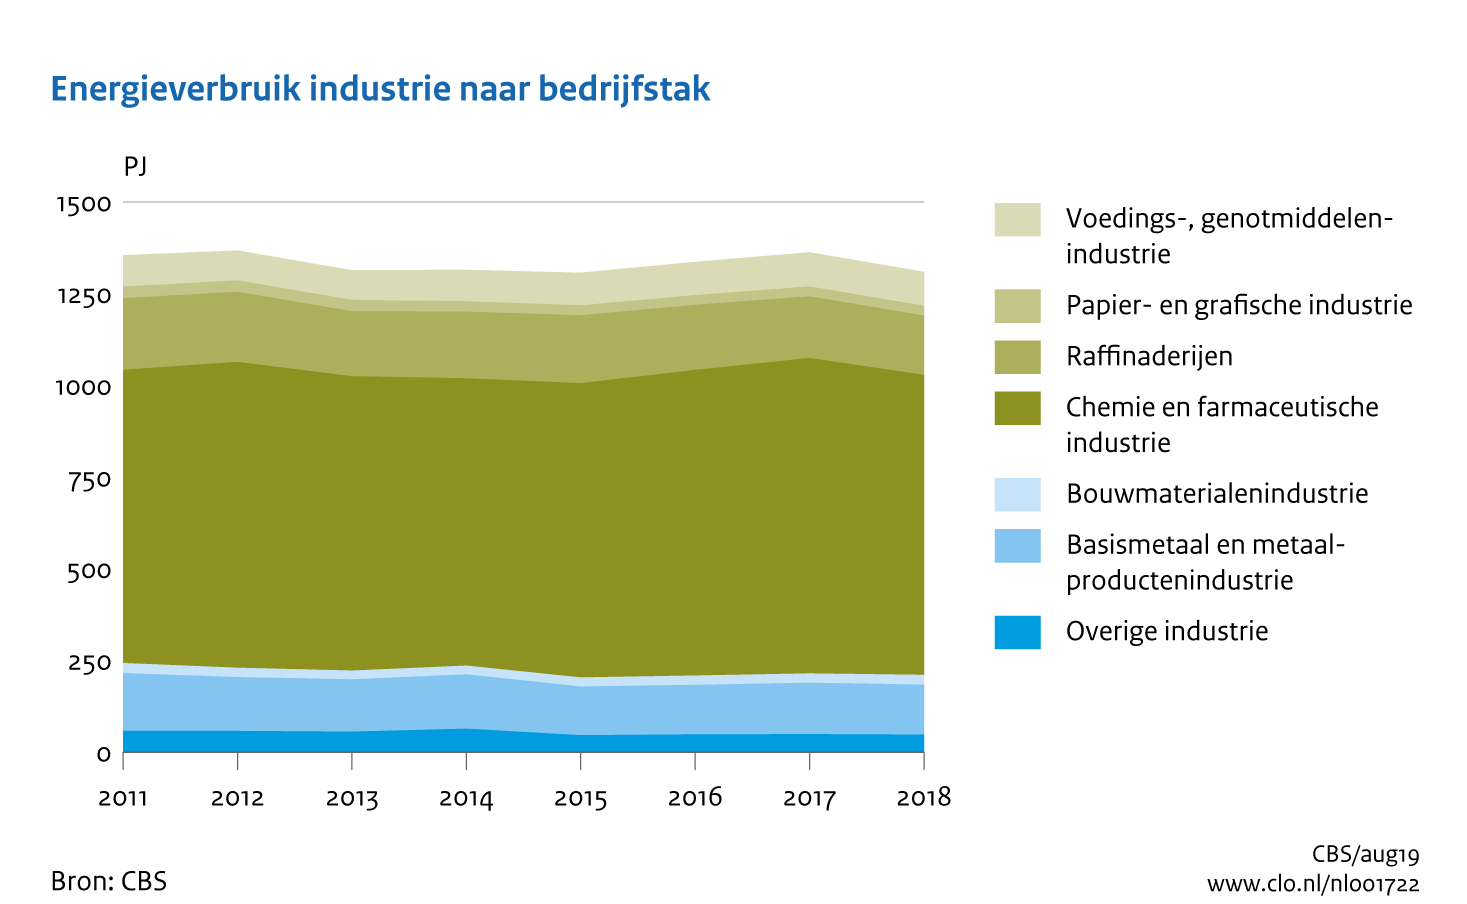 Figuur Energieverbruik industrie naar bedrijfstak 2011-2018. In de rest van de tekst wordt deze figuur uitgebreider uitgelegd.